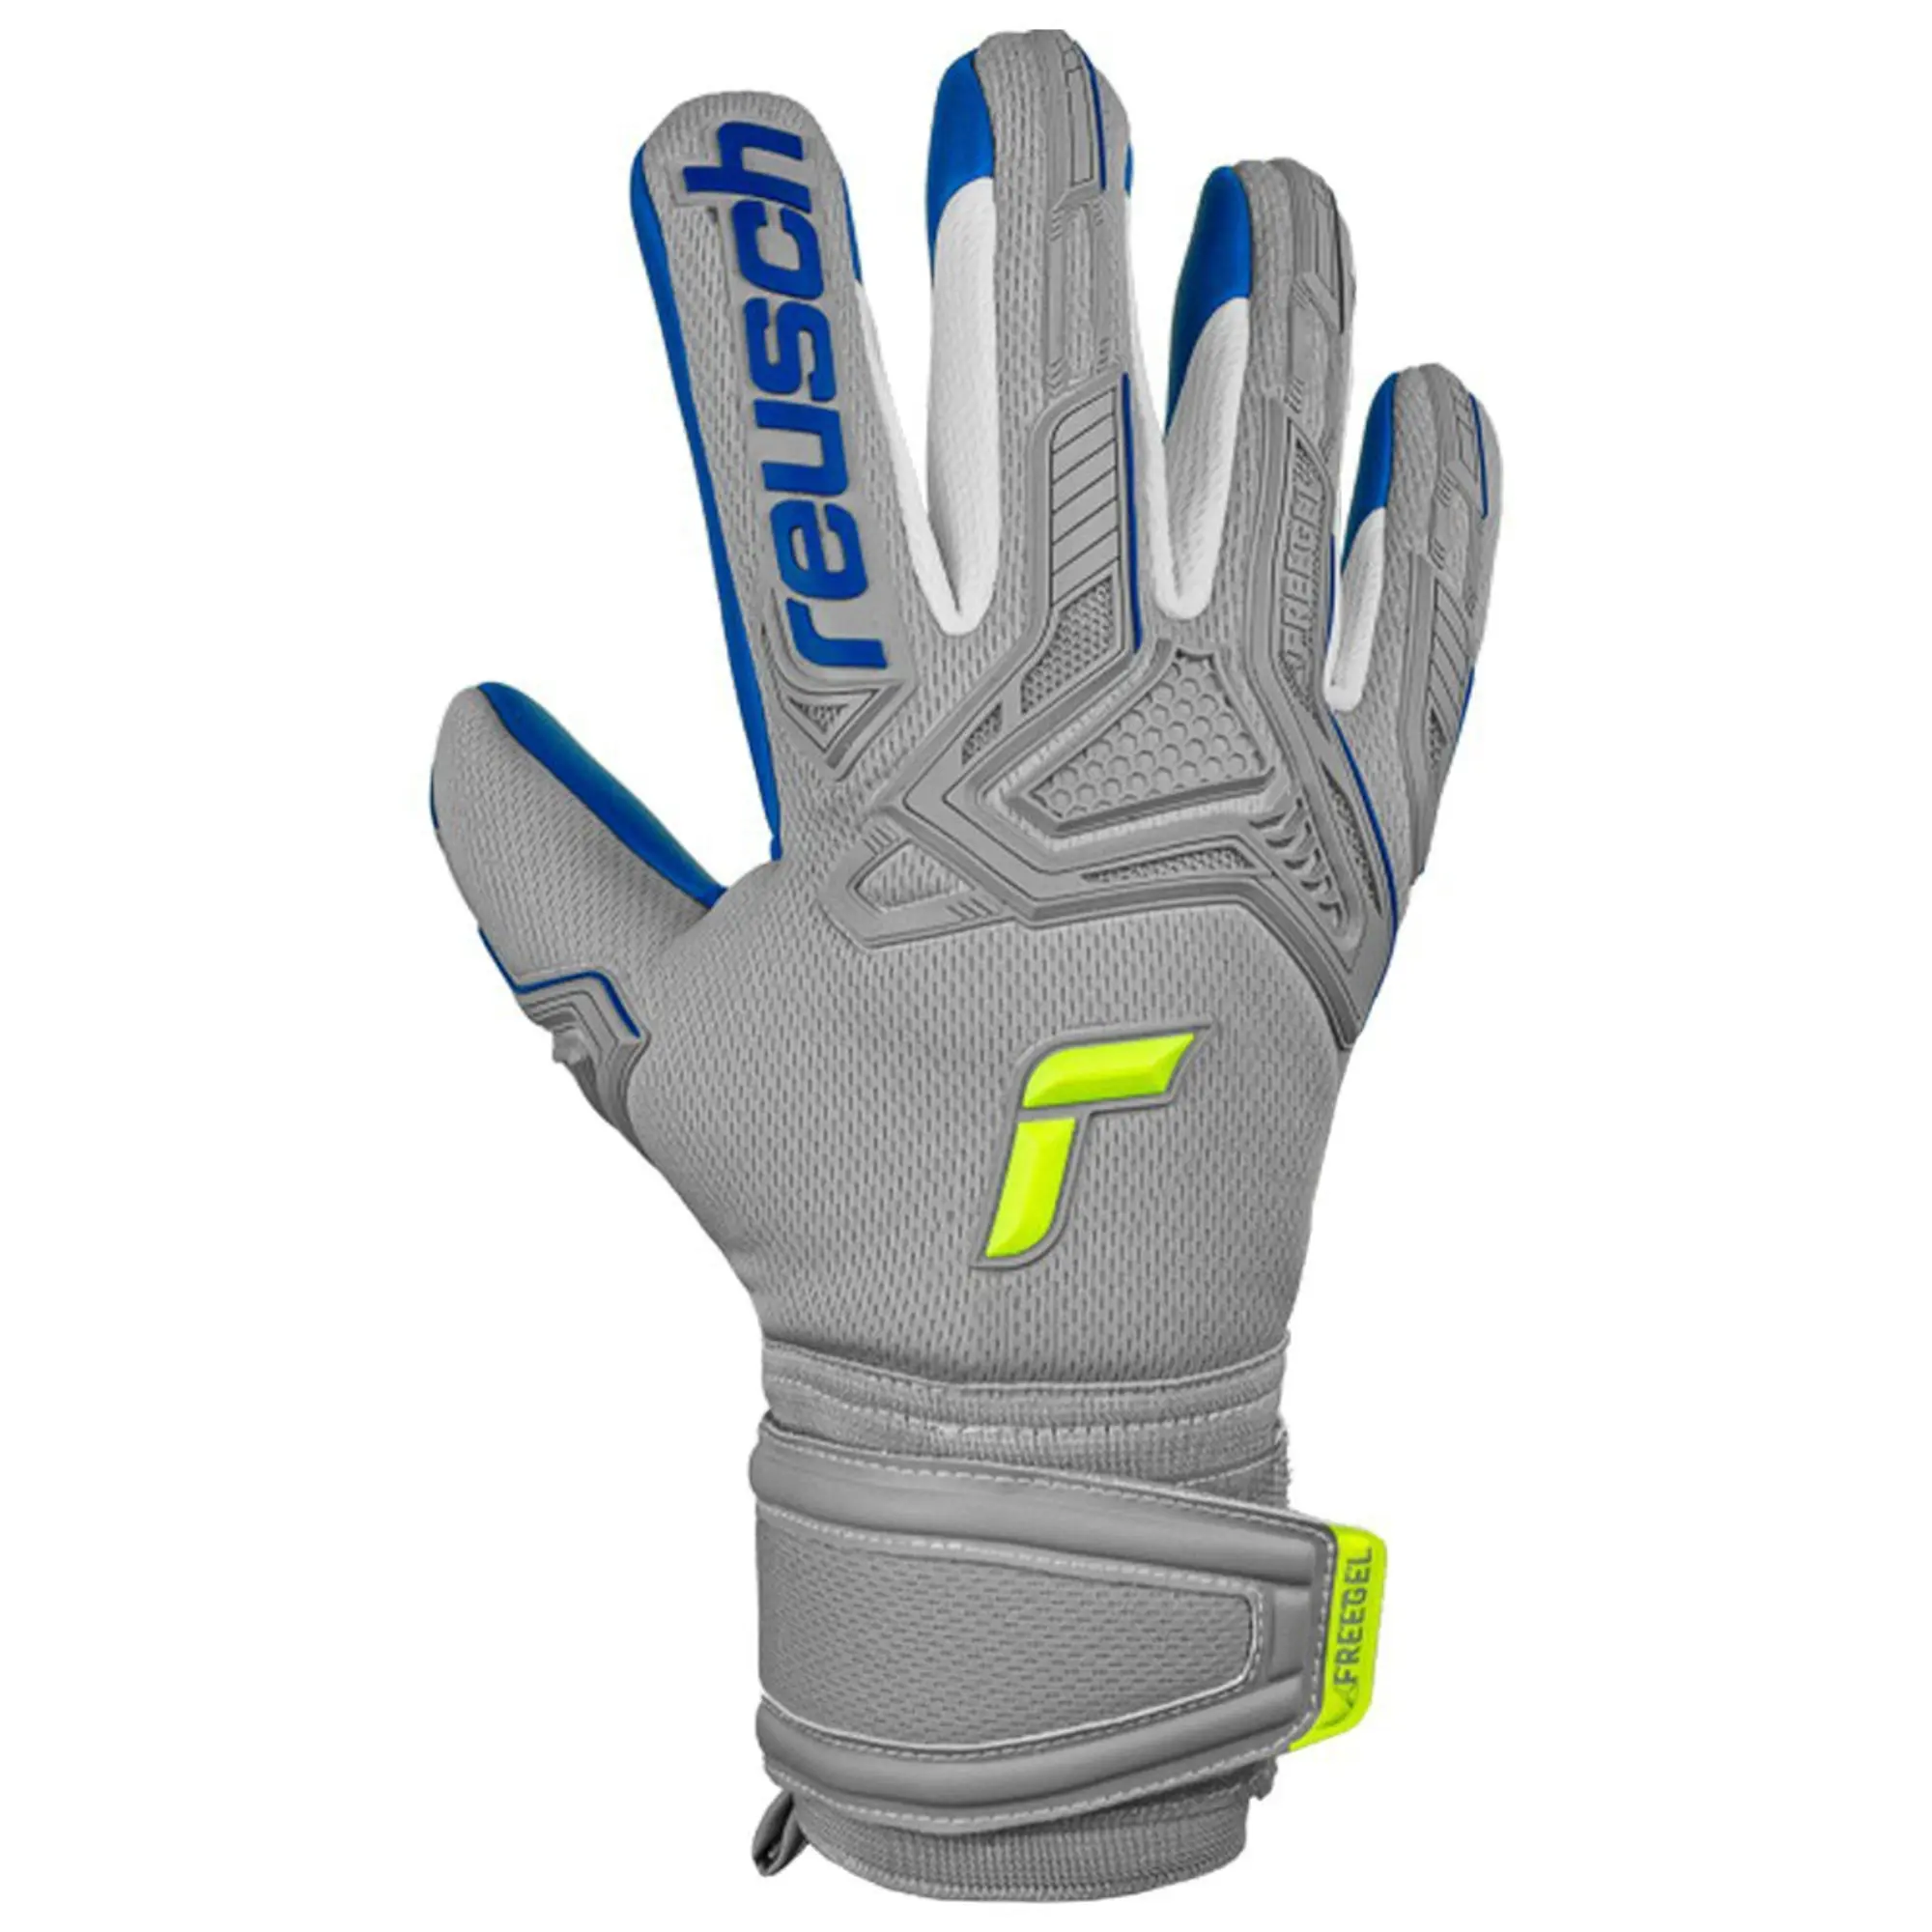 Reusch Attrakt Freegel Silver Goalkeeper Glove Grey/Blue - 11